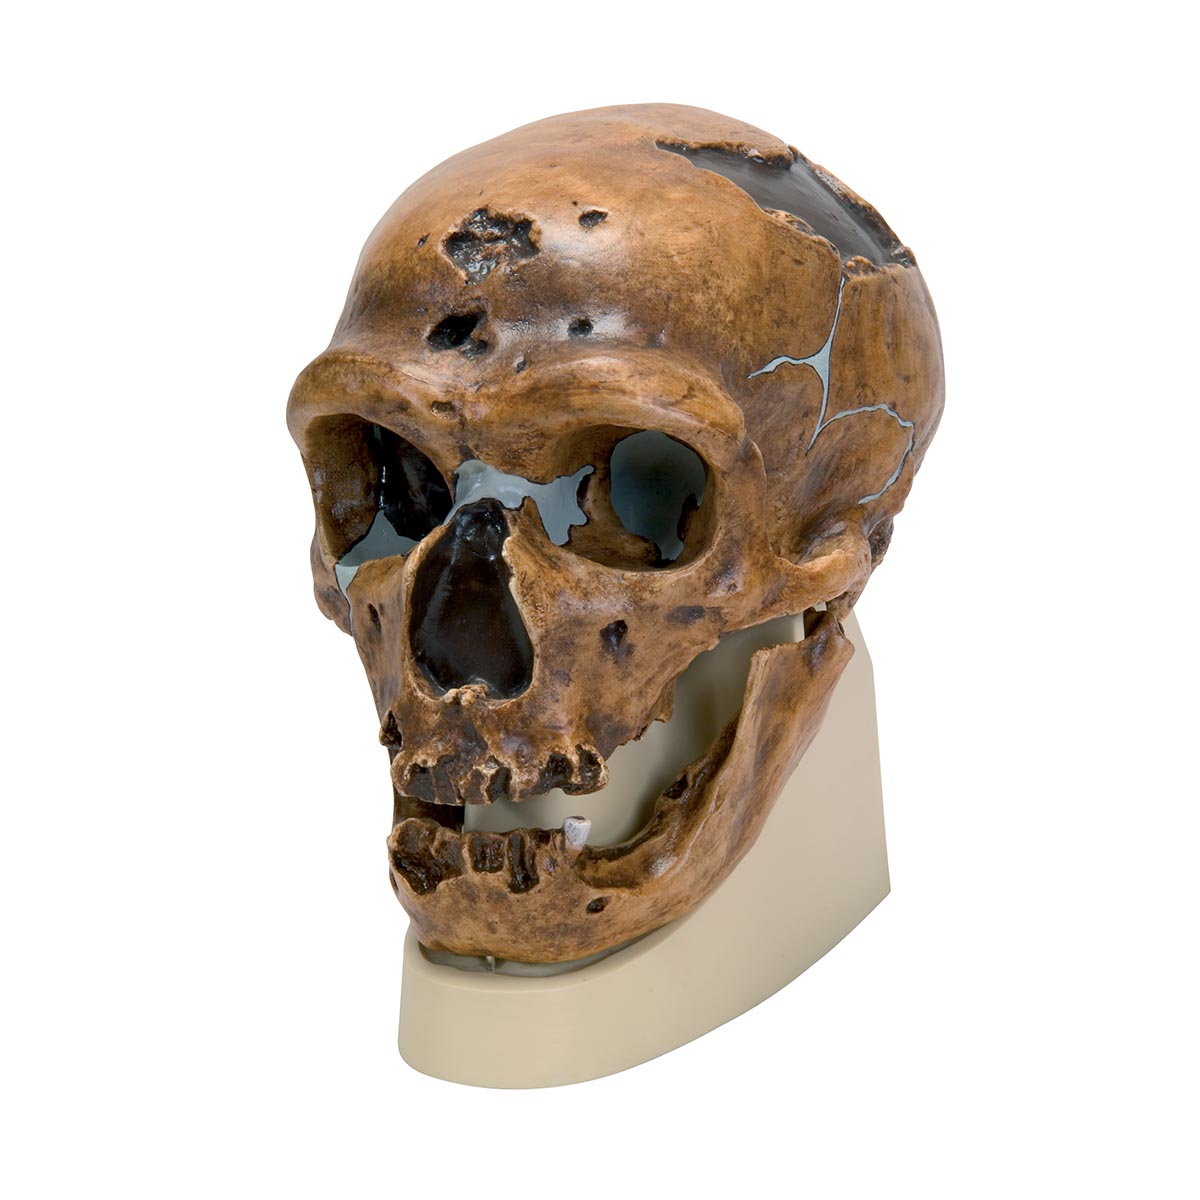 Schädelreplikat Homo neanderthalensis (La Chapelle-aux-Saints 1), Bestellnummer 1001294, VP751/1, 3B Scientific